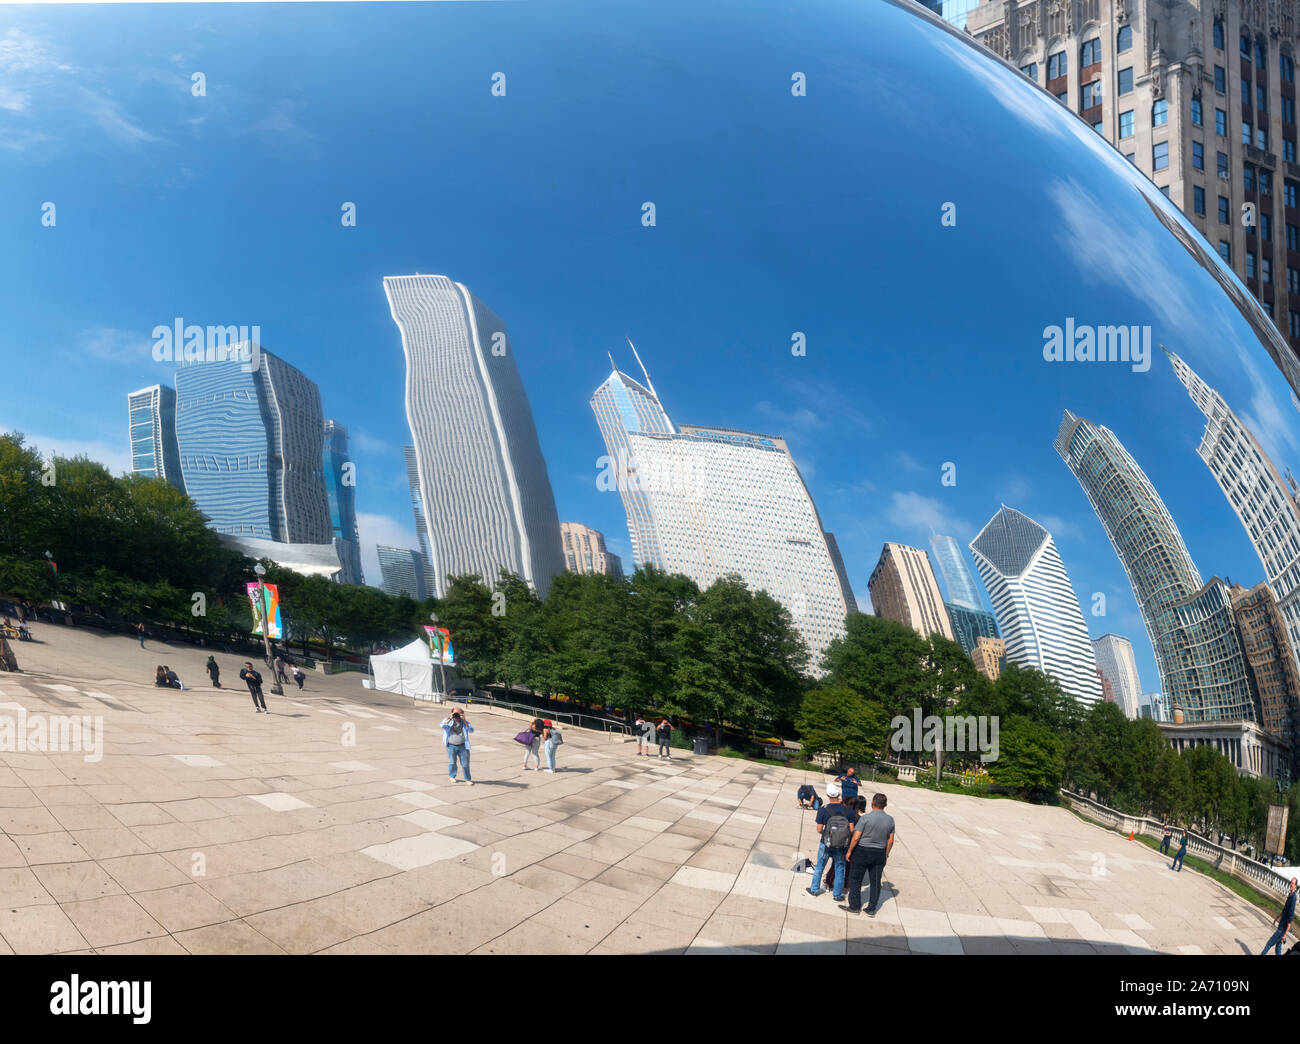 Anish Kapoor's 'Cloud Gate' dans le parc de sculptures du millénaire reflétant le centre-ville, Chicago, Illinois, États-Unis Banque D'Images